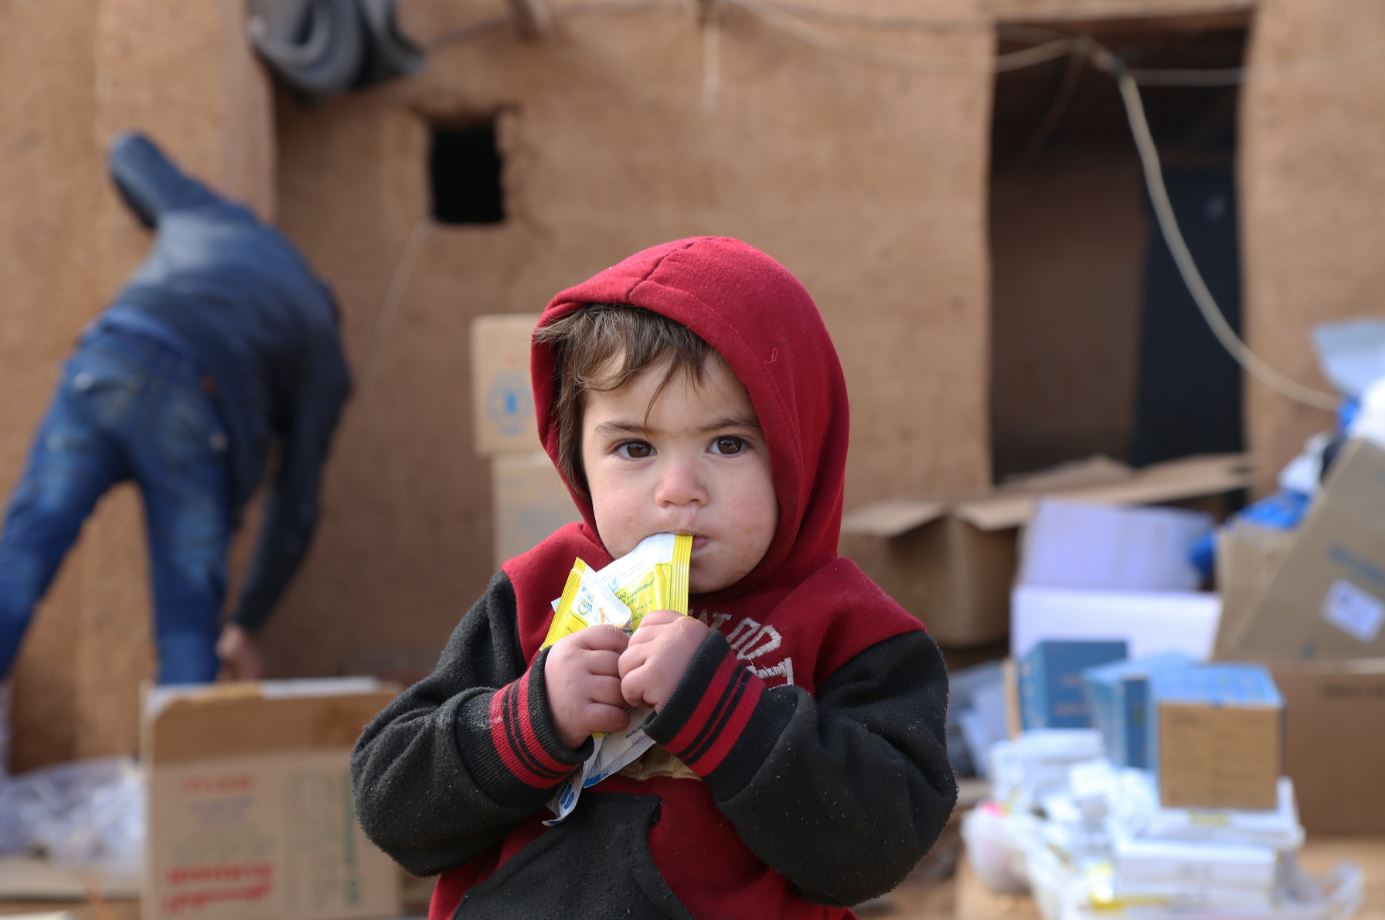 منذ بداية الأزمة السورية، قدمت الحكومة الألمانية مساهمات لبرنامج الأغذية العالمي بلغت حوالي ملياري يورو لتوفير المساعدات الغذائية بالإضافة إلى الخدمات اللوجستية. صورة: برنامج الأغذية العالمي